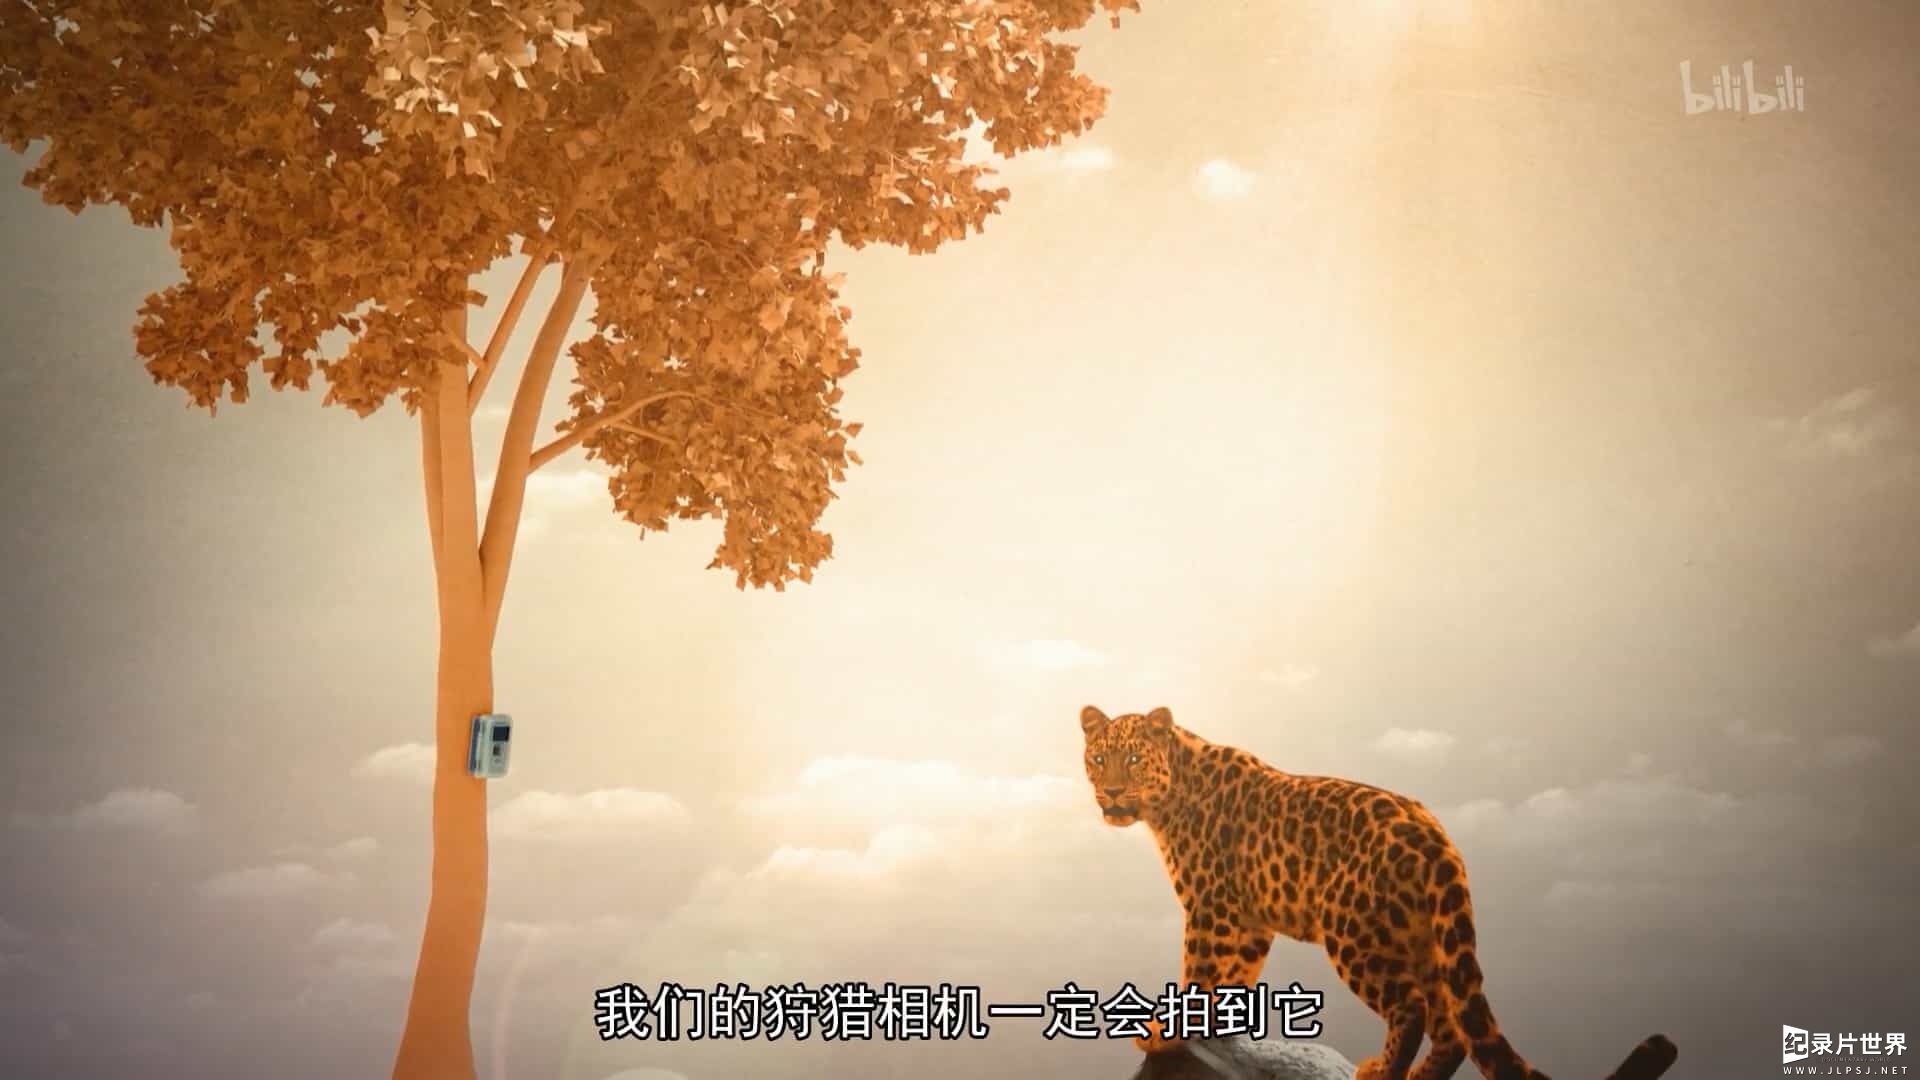 俄罗斯纪录片《豹子故事》全14集 